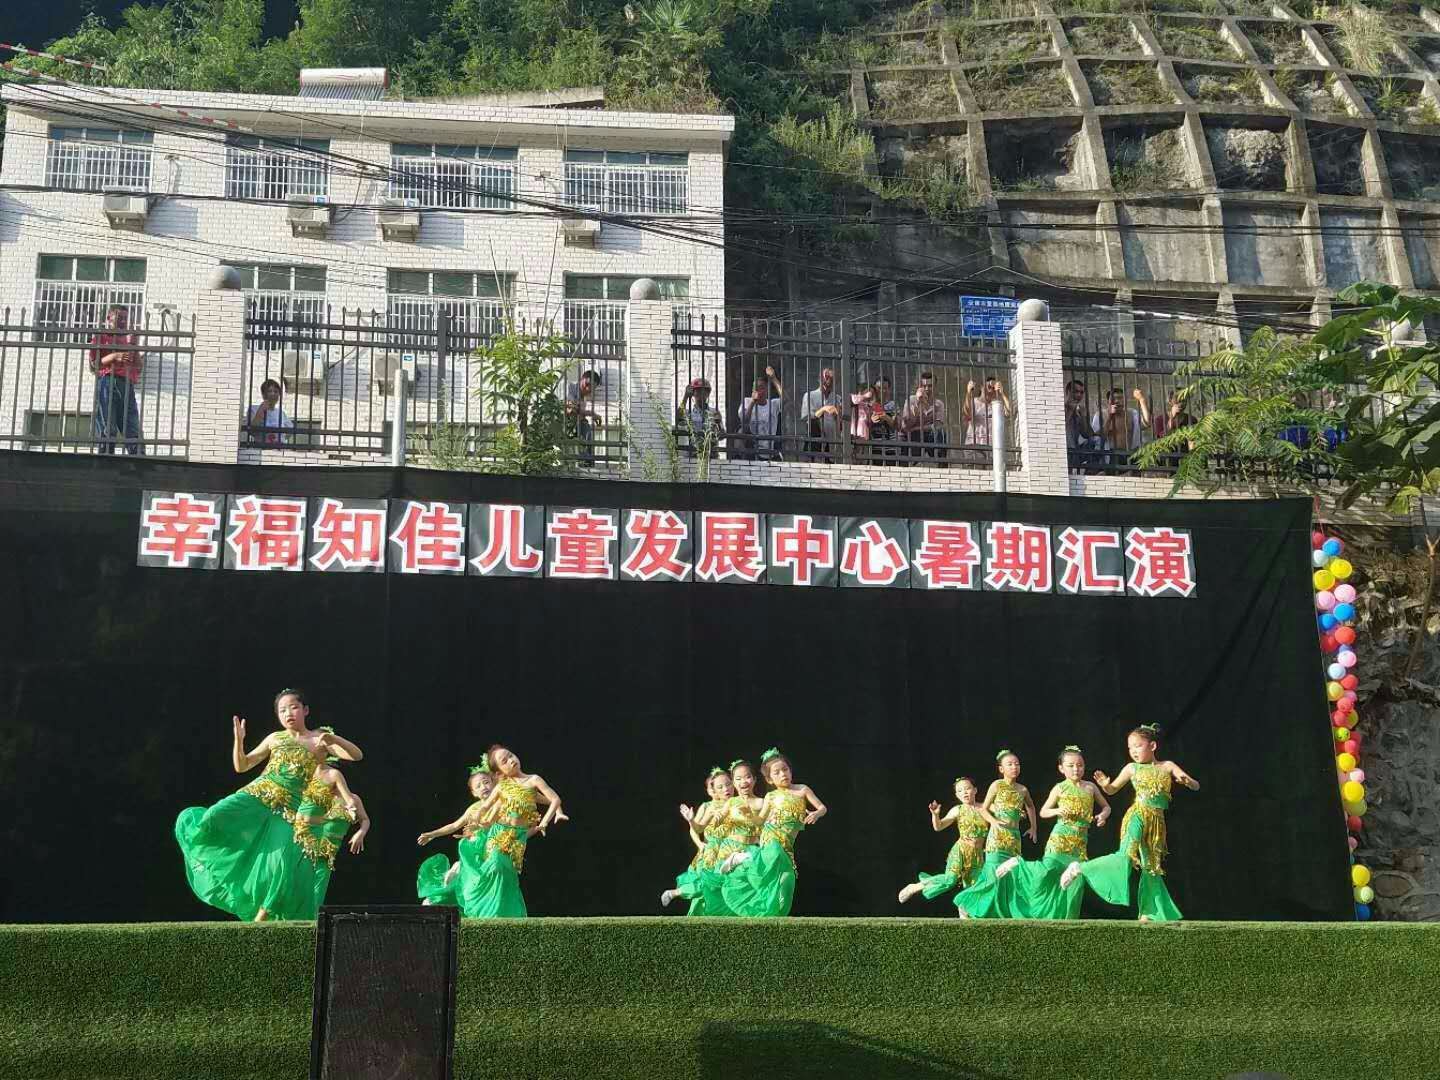 平利县八仙镇举行暑期汇报演出活动 500余人现